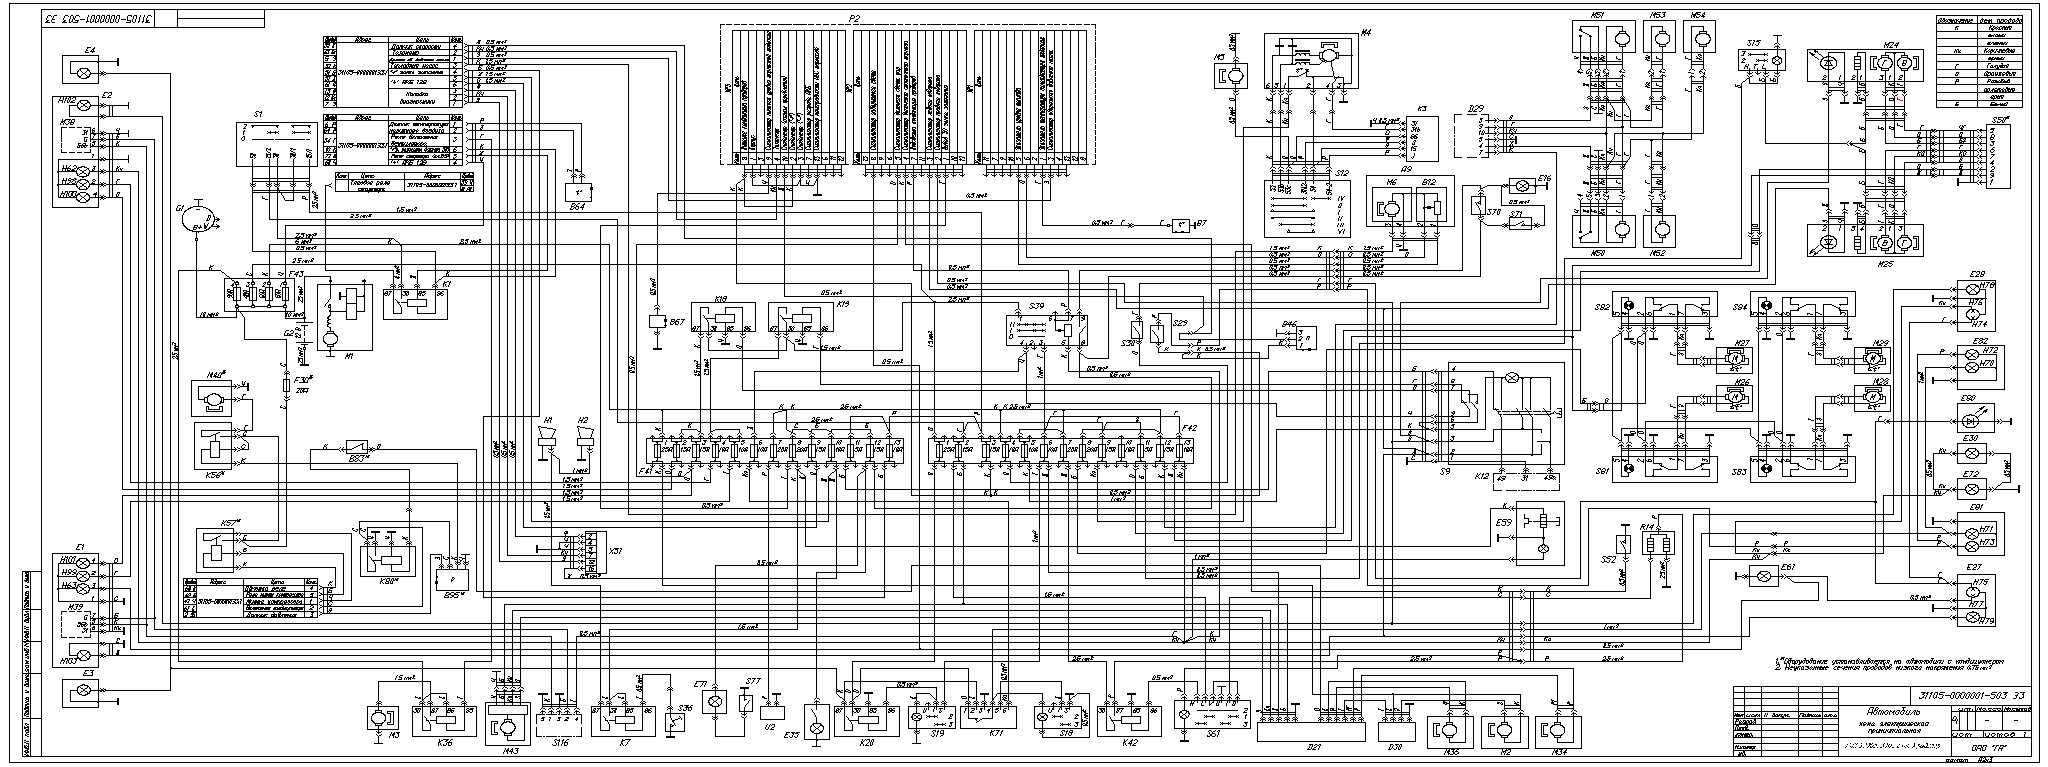 газ 32213 схема электрооборудования